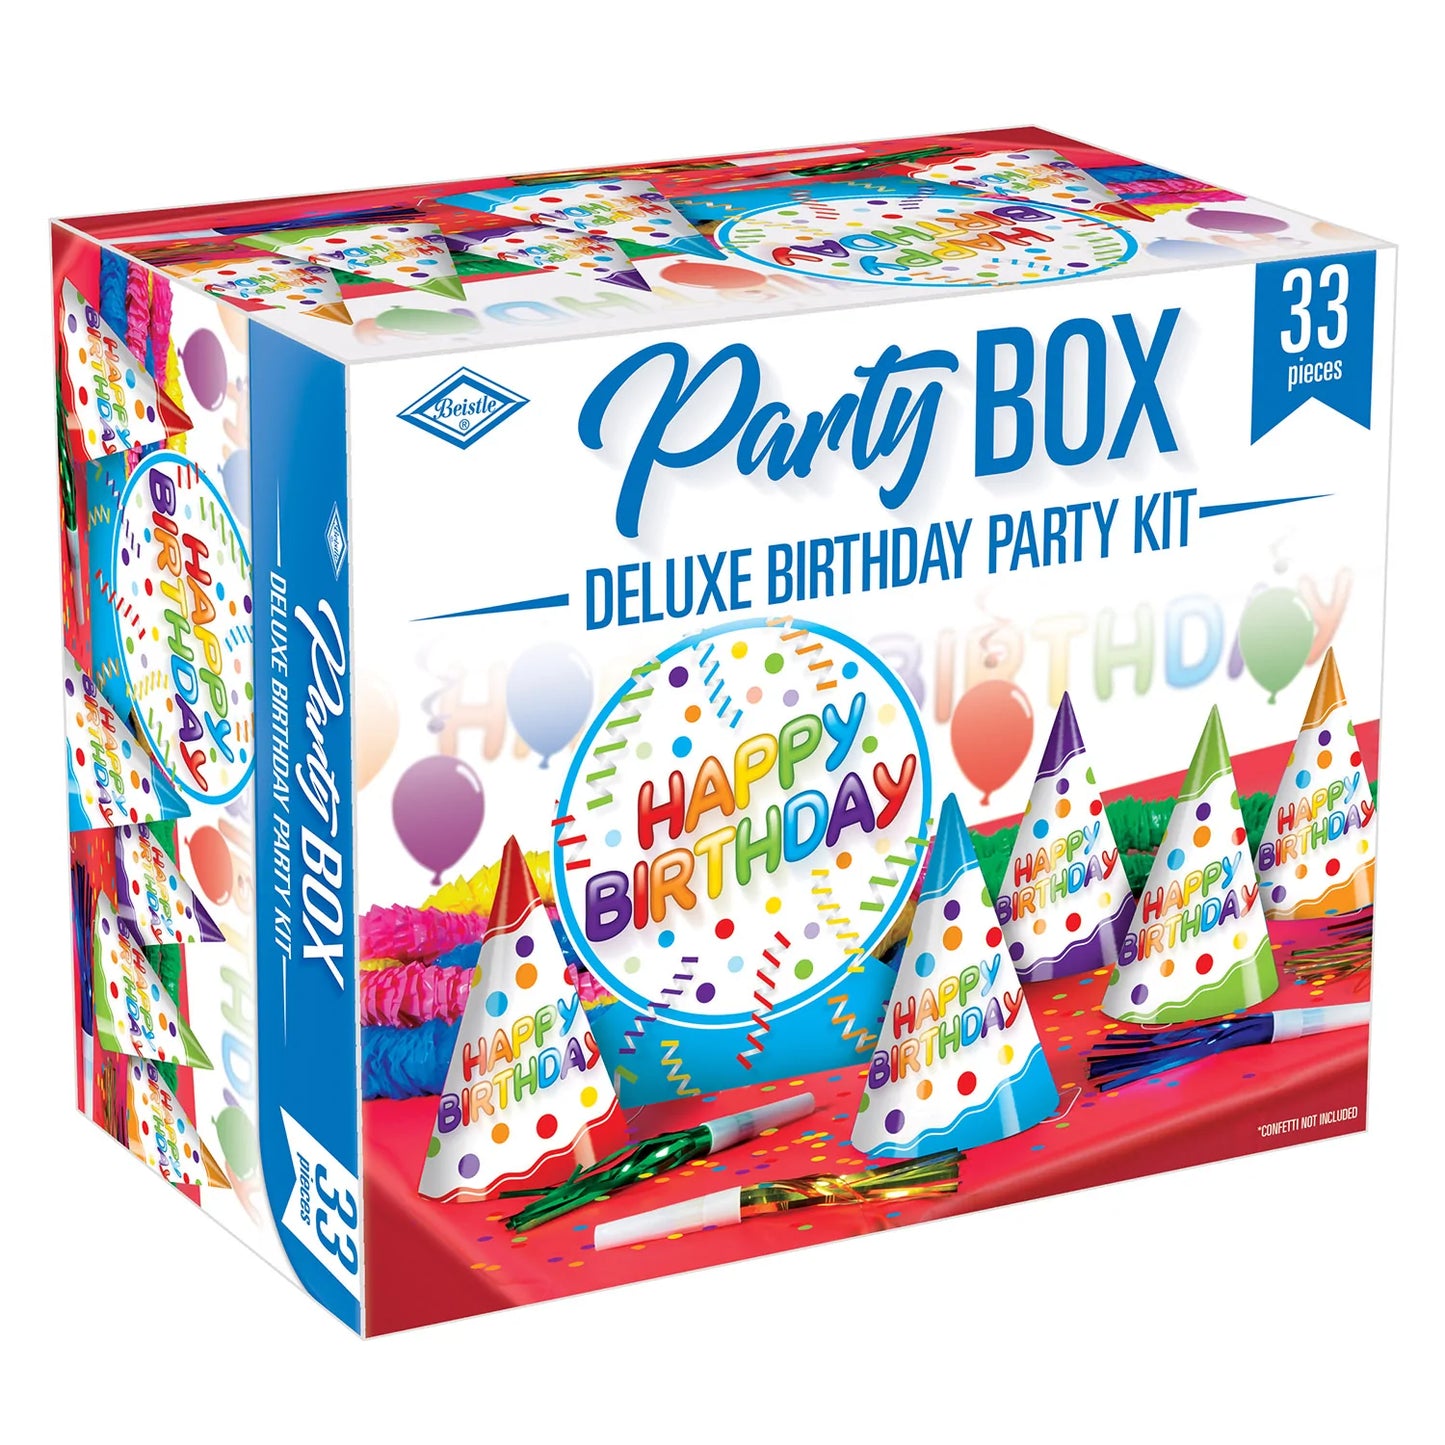 Deluxe Birthday Party Box